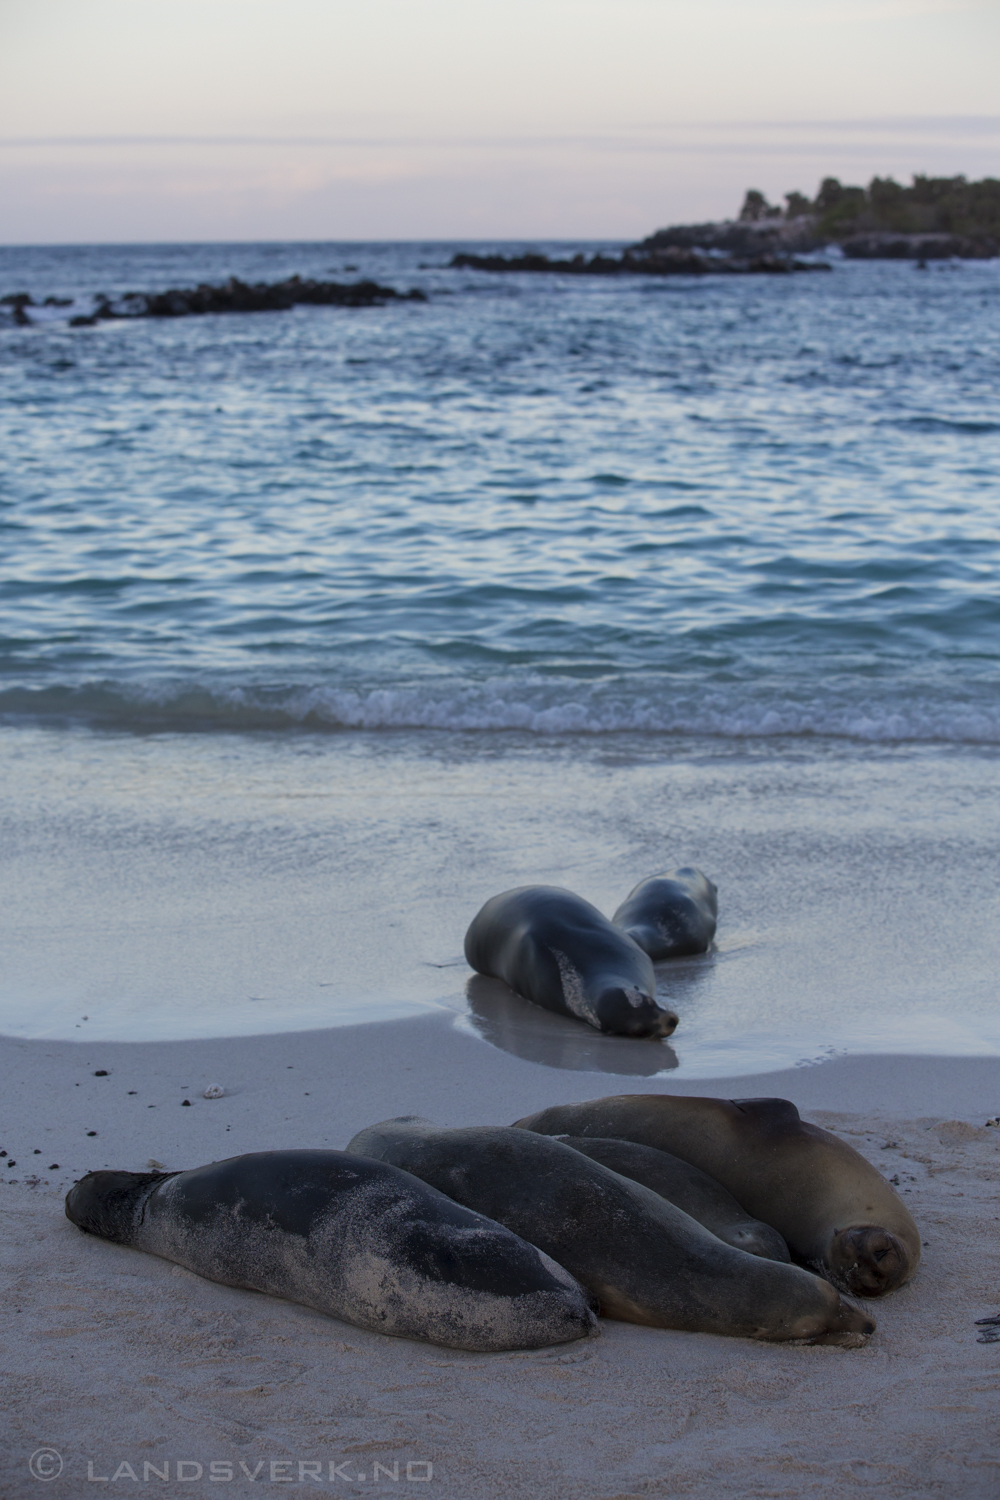 Wild Sea Lions, Islas Plaza, Isla Santa Cruz, Galapagos. 

(Canon EOS 5D Mark III / Canon EF 70-200mm f/2.8 L IS II USM)